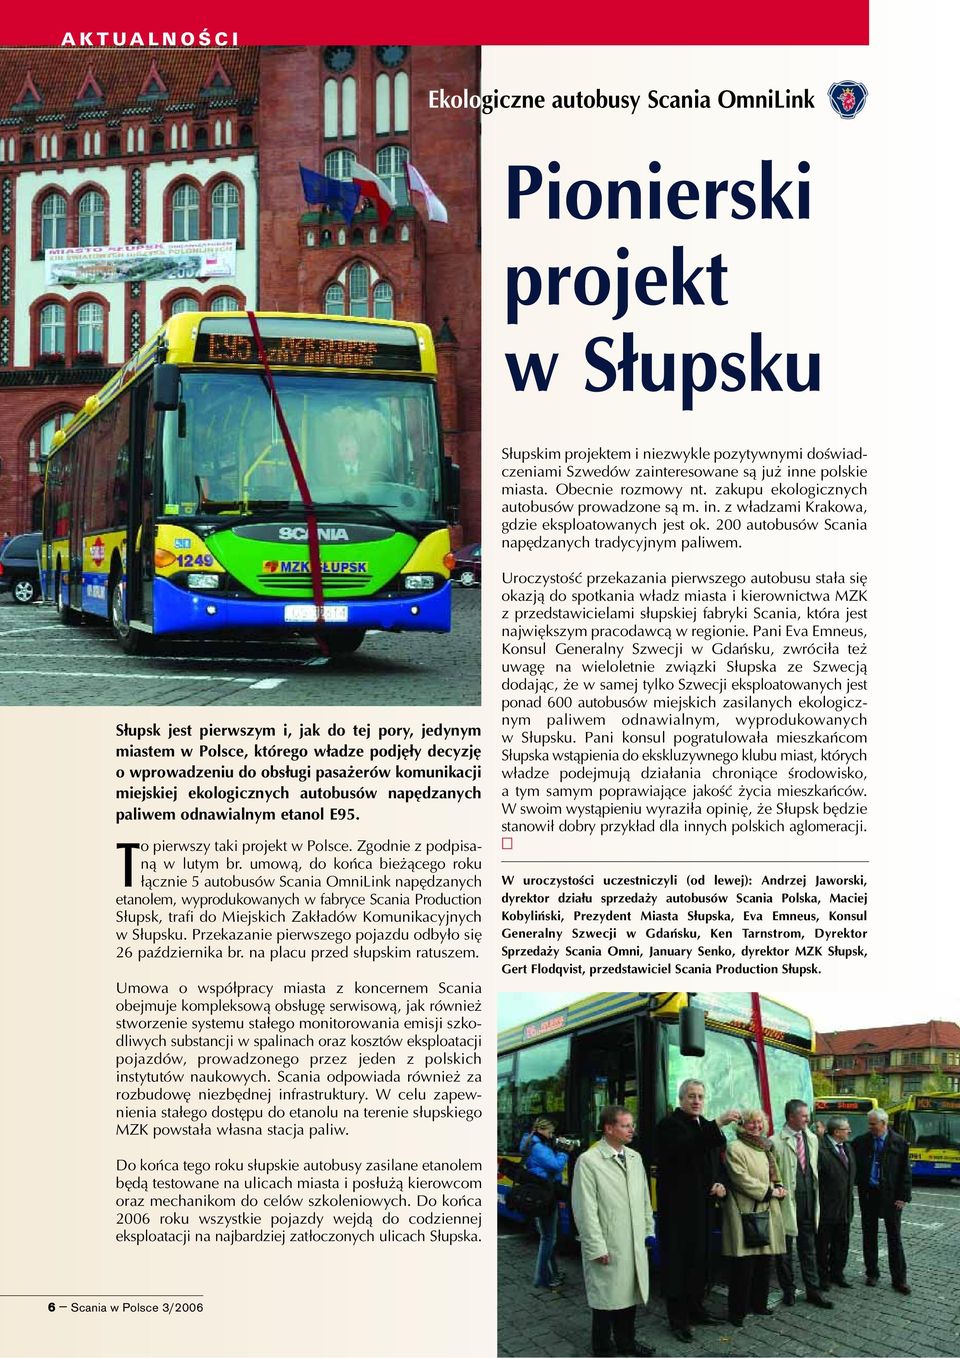 S³upsk jest pierwszym i, jak do tej pory, jedynym miastem w Polsce, którego w³adze podjê³y decyzjê o wprowadzeniu do obs³ugi pasa erów komunikacji miejskiej ekologicznych autobusów napêdzanych